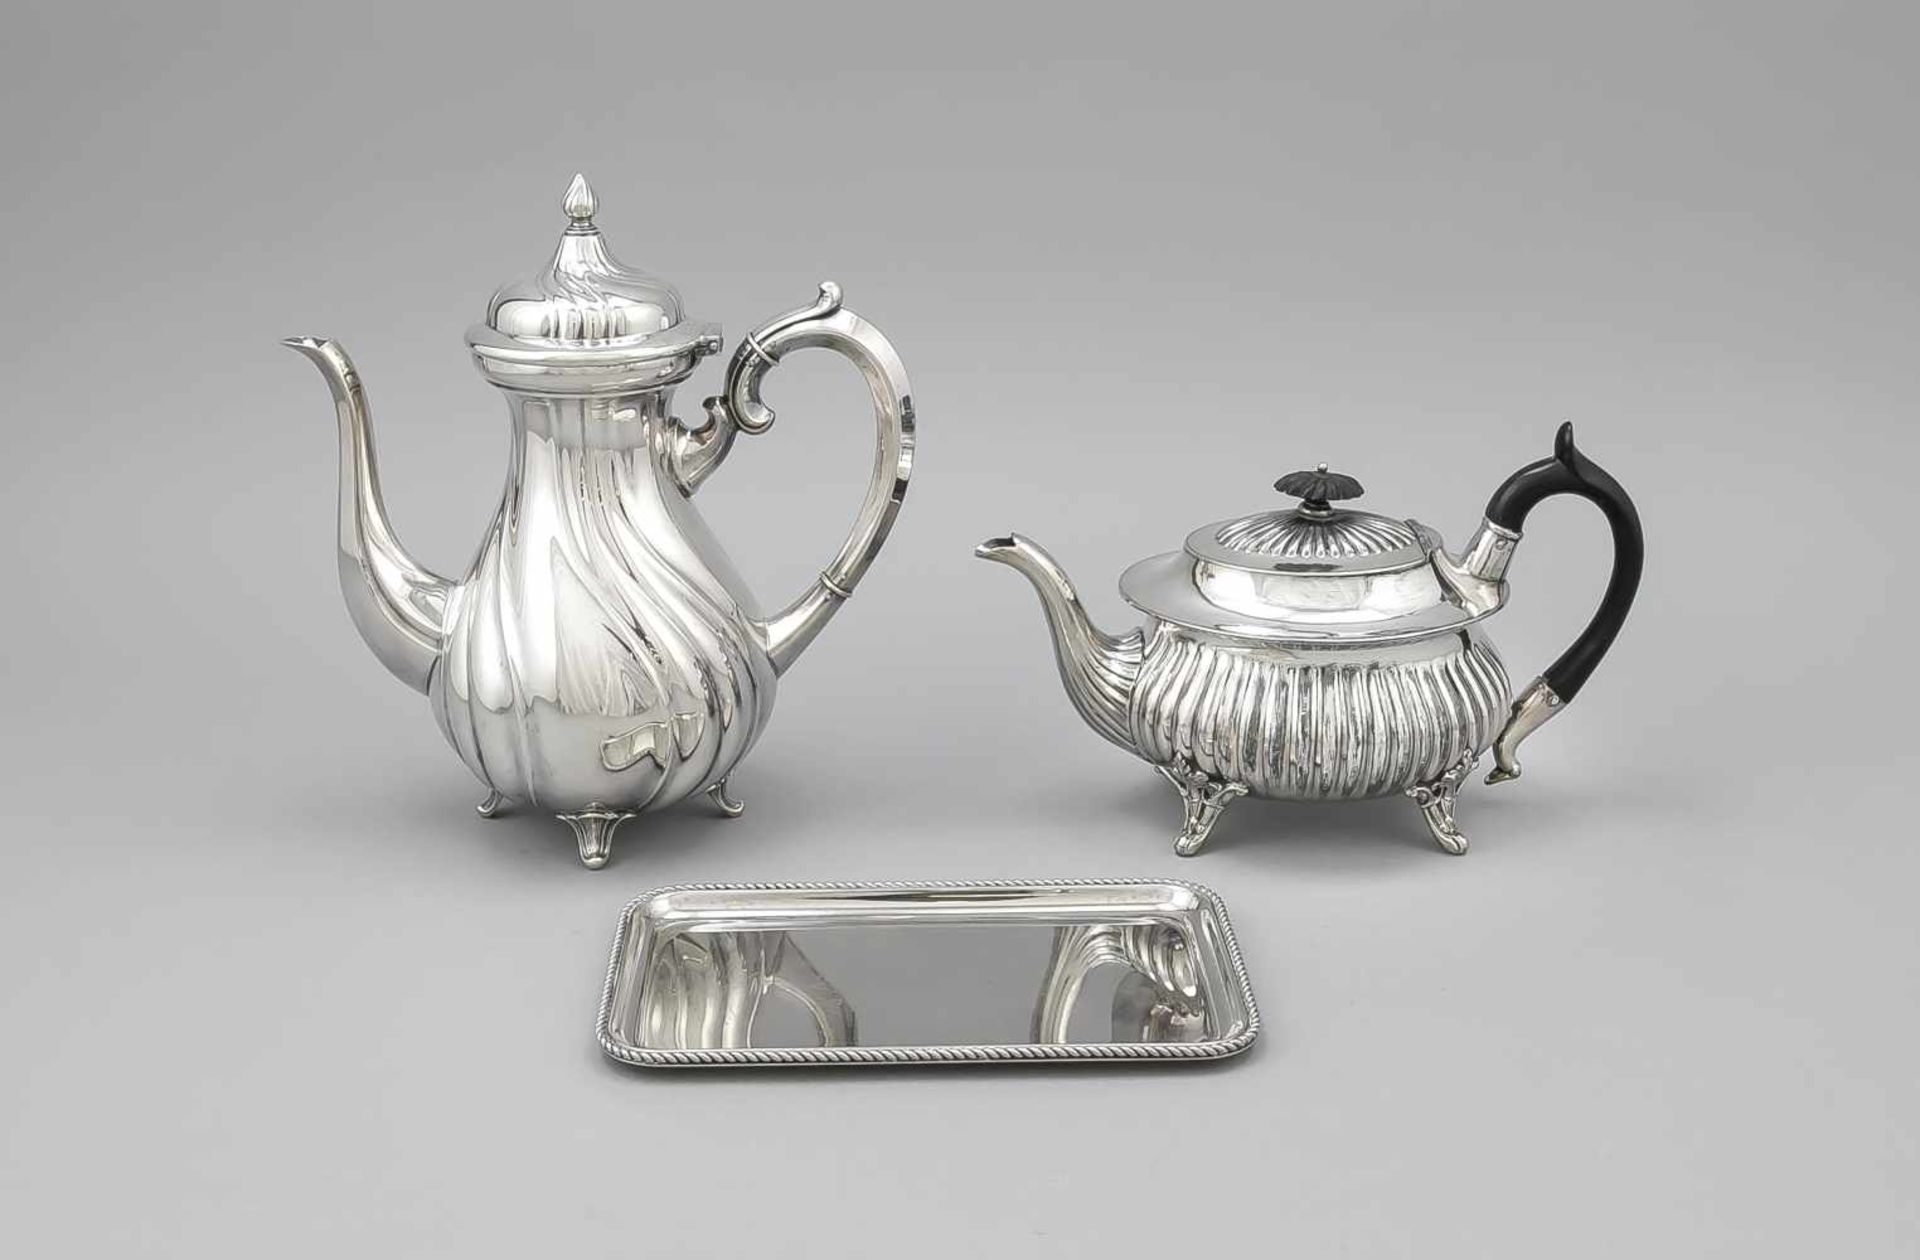 Konvolut von drei Teilen, 20. Jh., plated, Tee- und Kaffeekanne, unterschiedliche Formenund